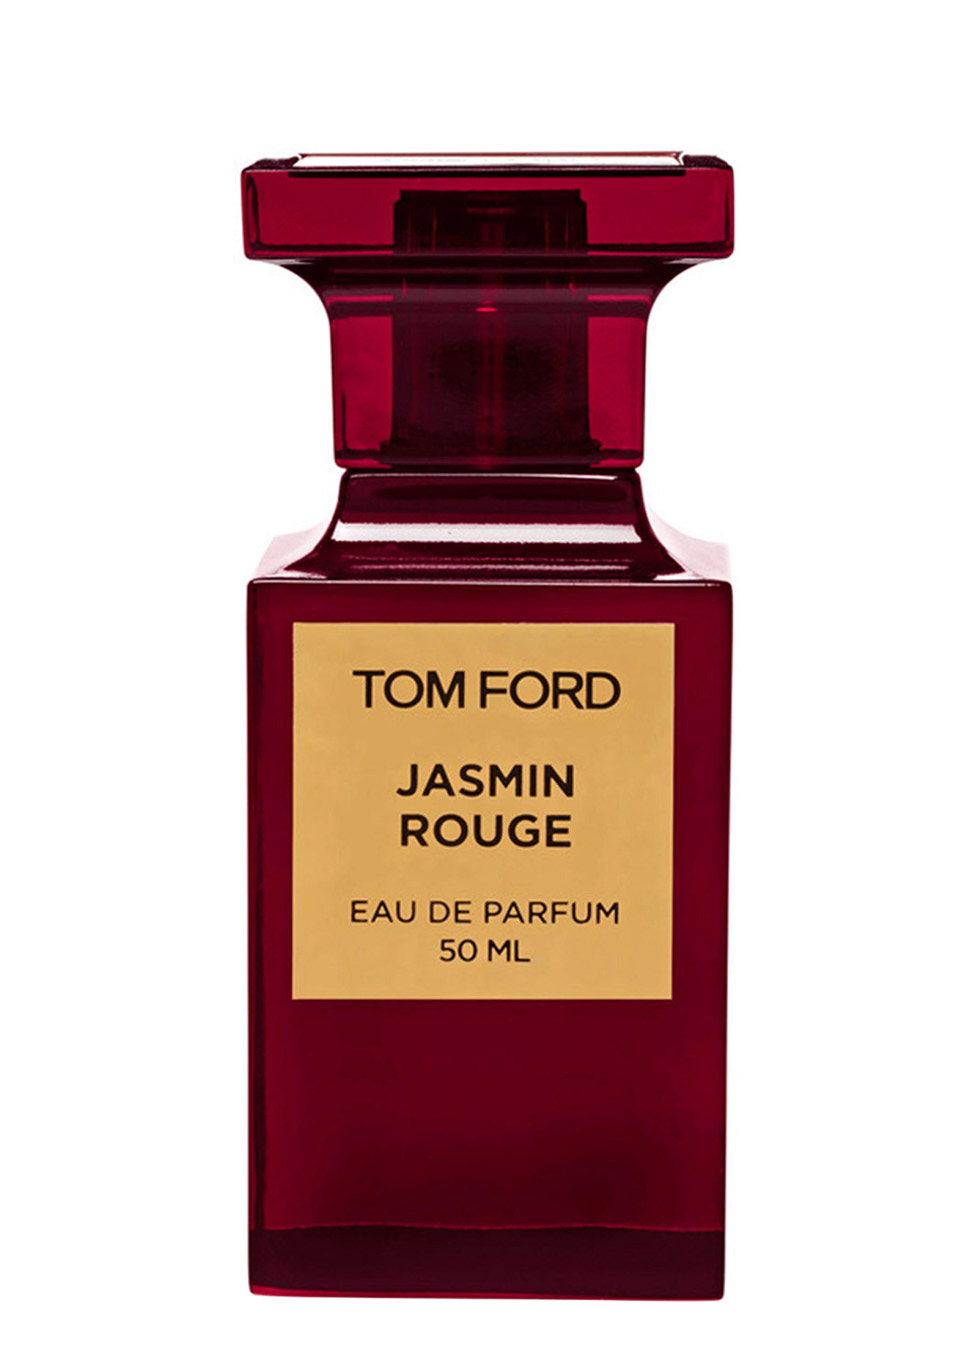 Tom Ford Jasmin Rouge Eau De Parfum 50ml - Harvey Nichols